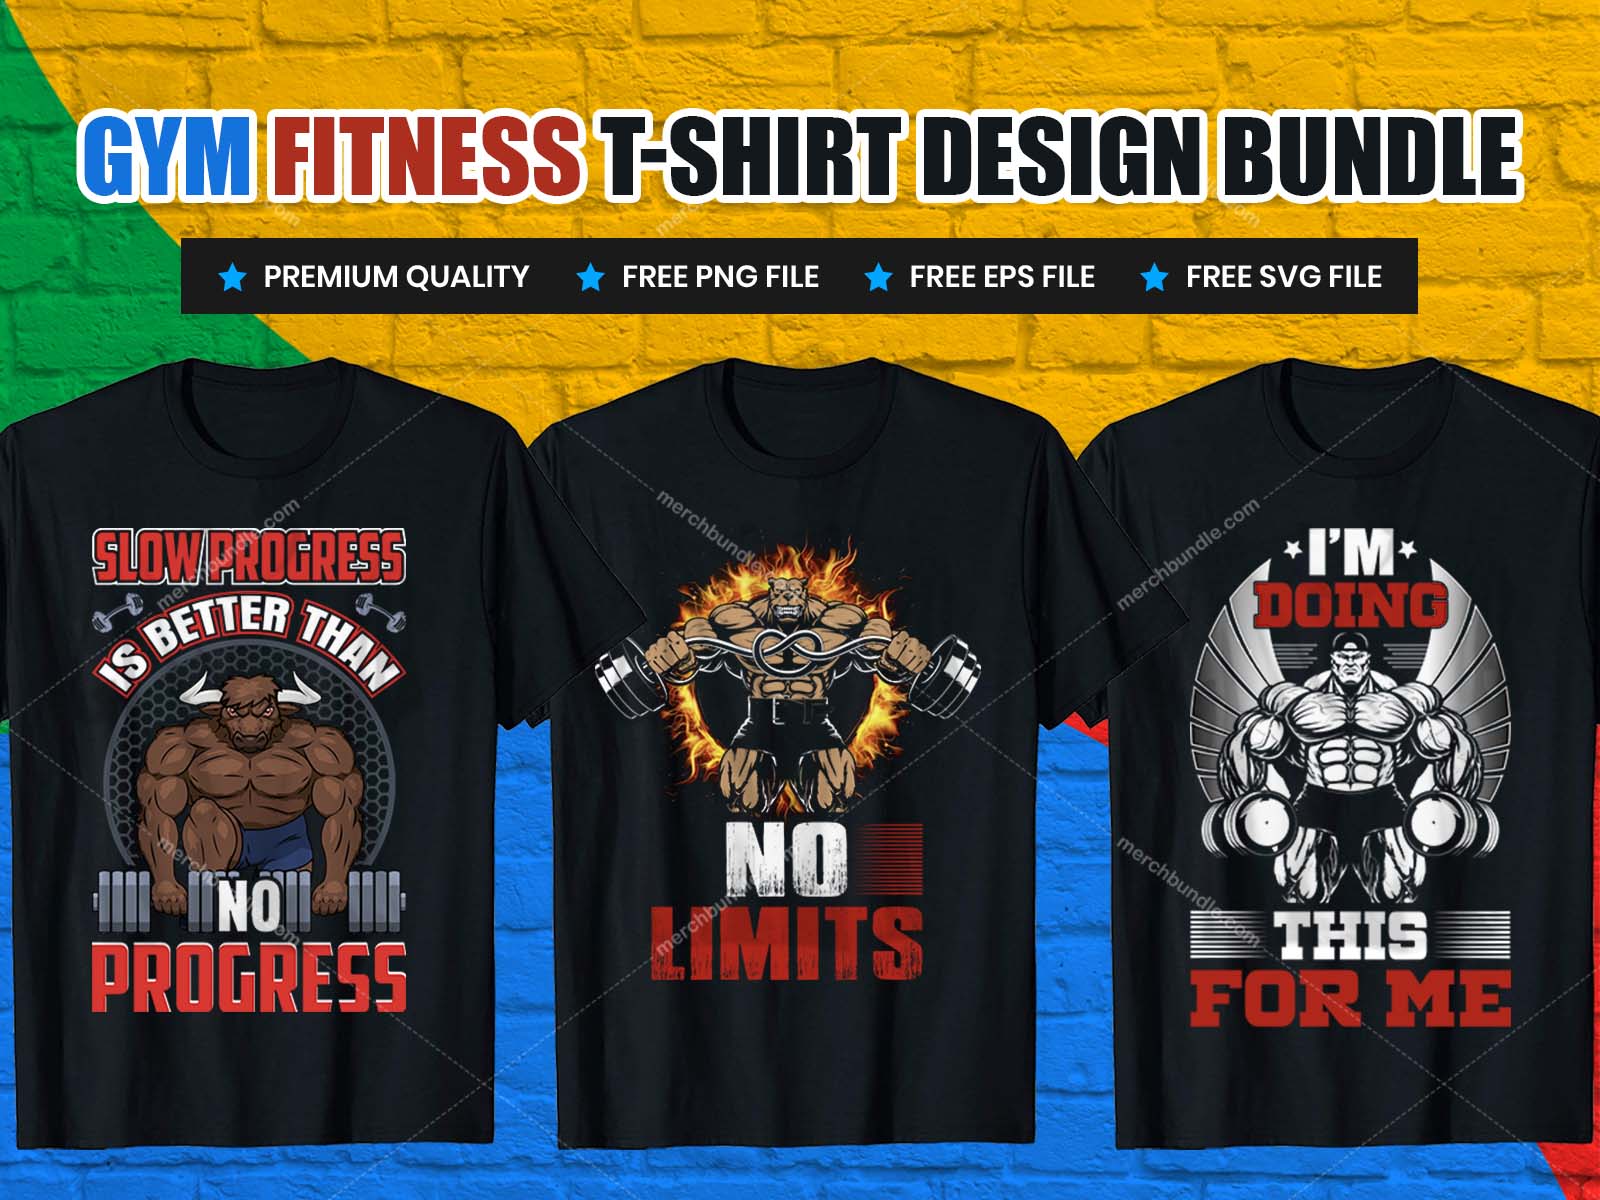 Gym fitness t shirt design